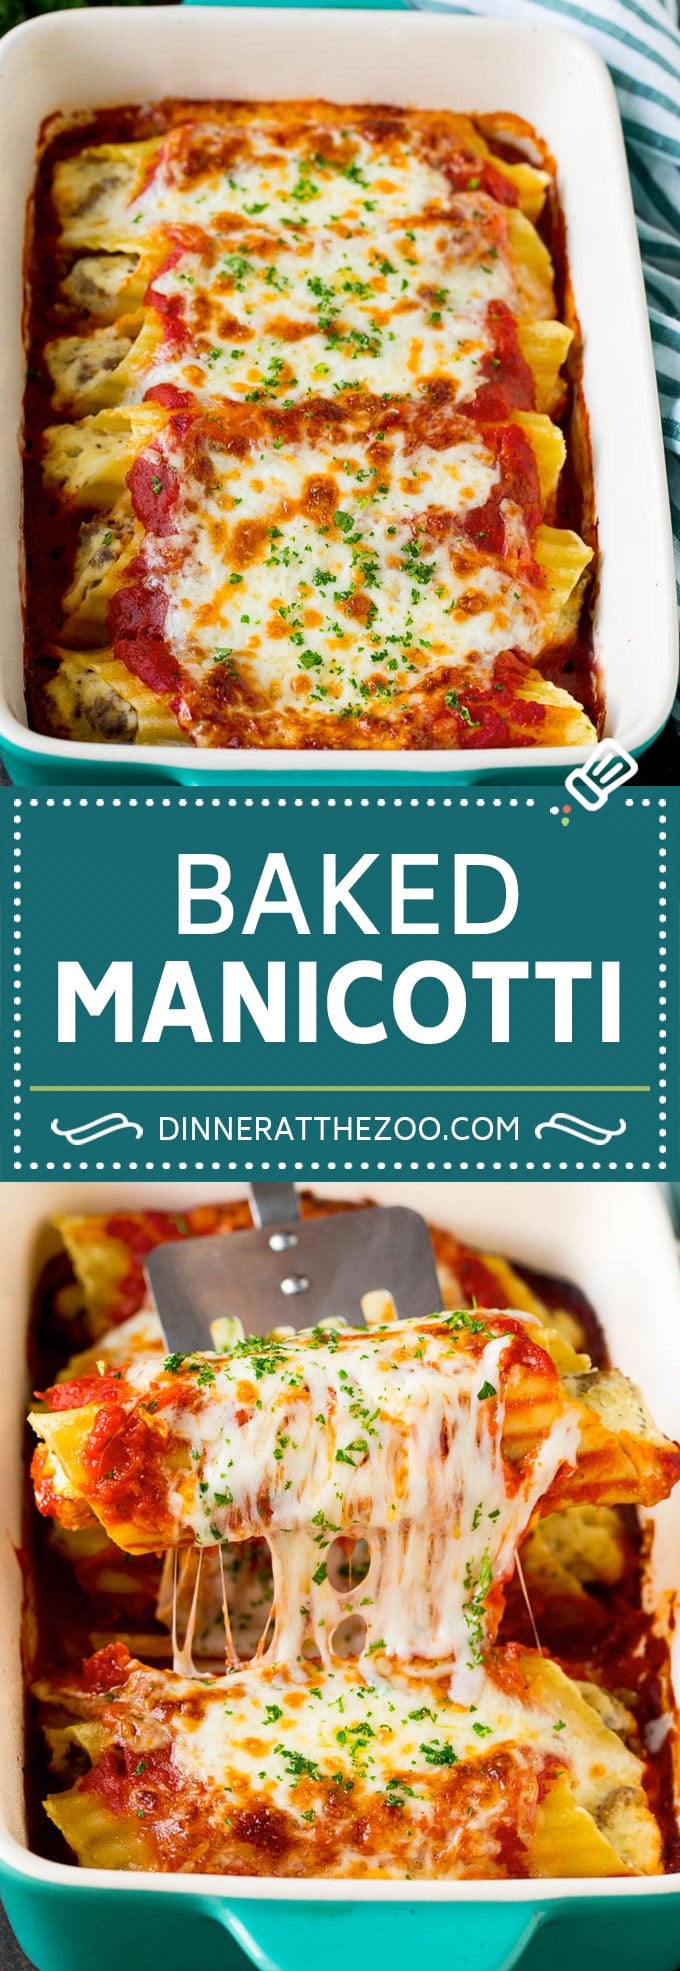 Baked Manicotti Recipe #pasta #cheese #dinner #dinneratthezoo